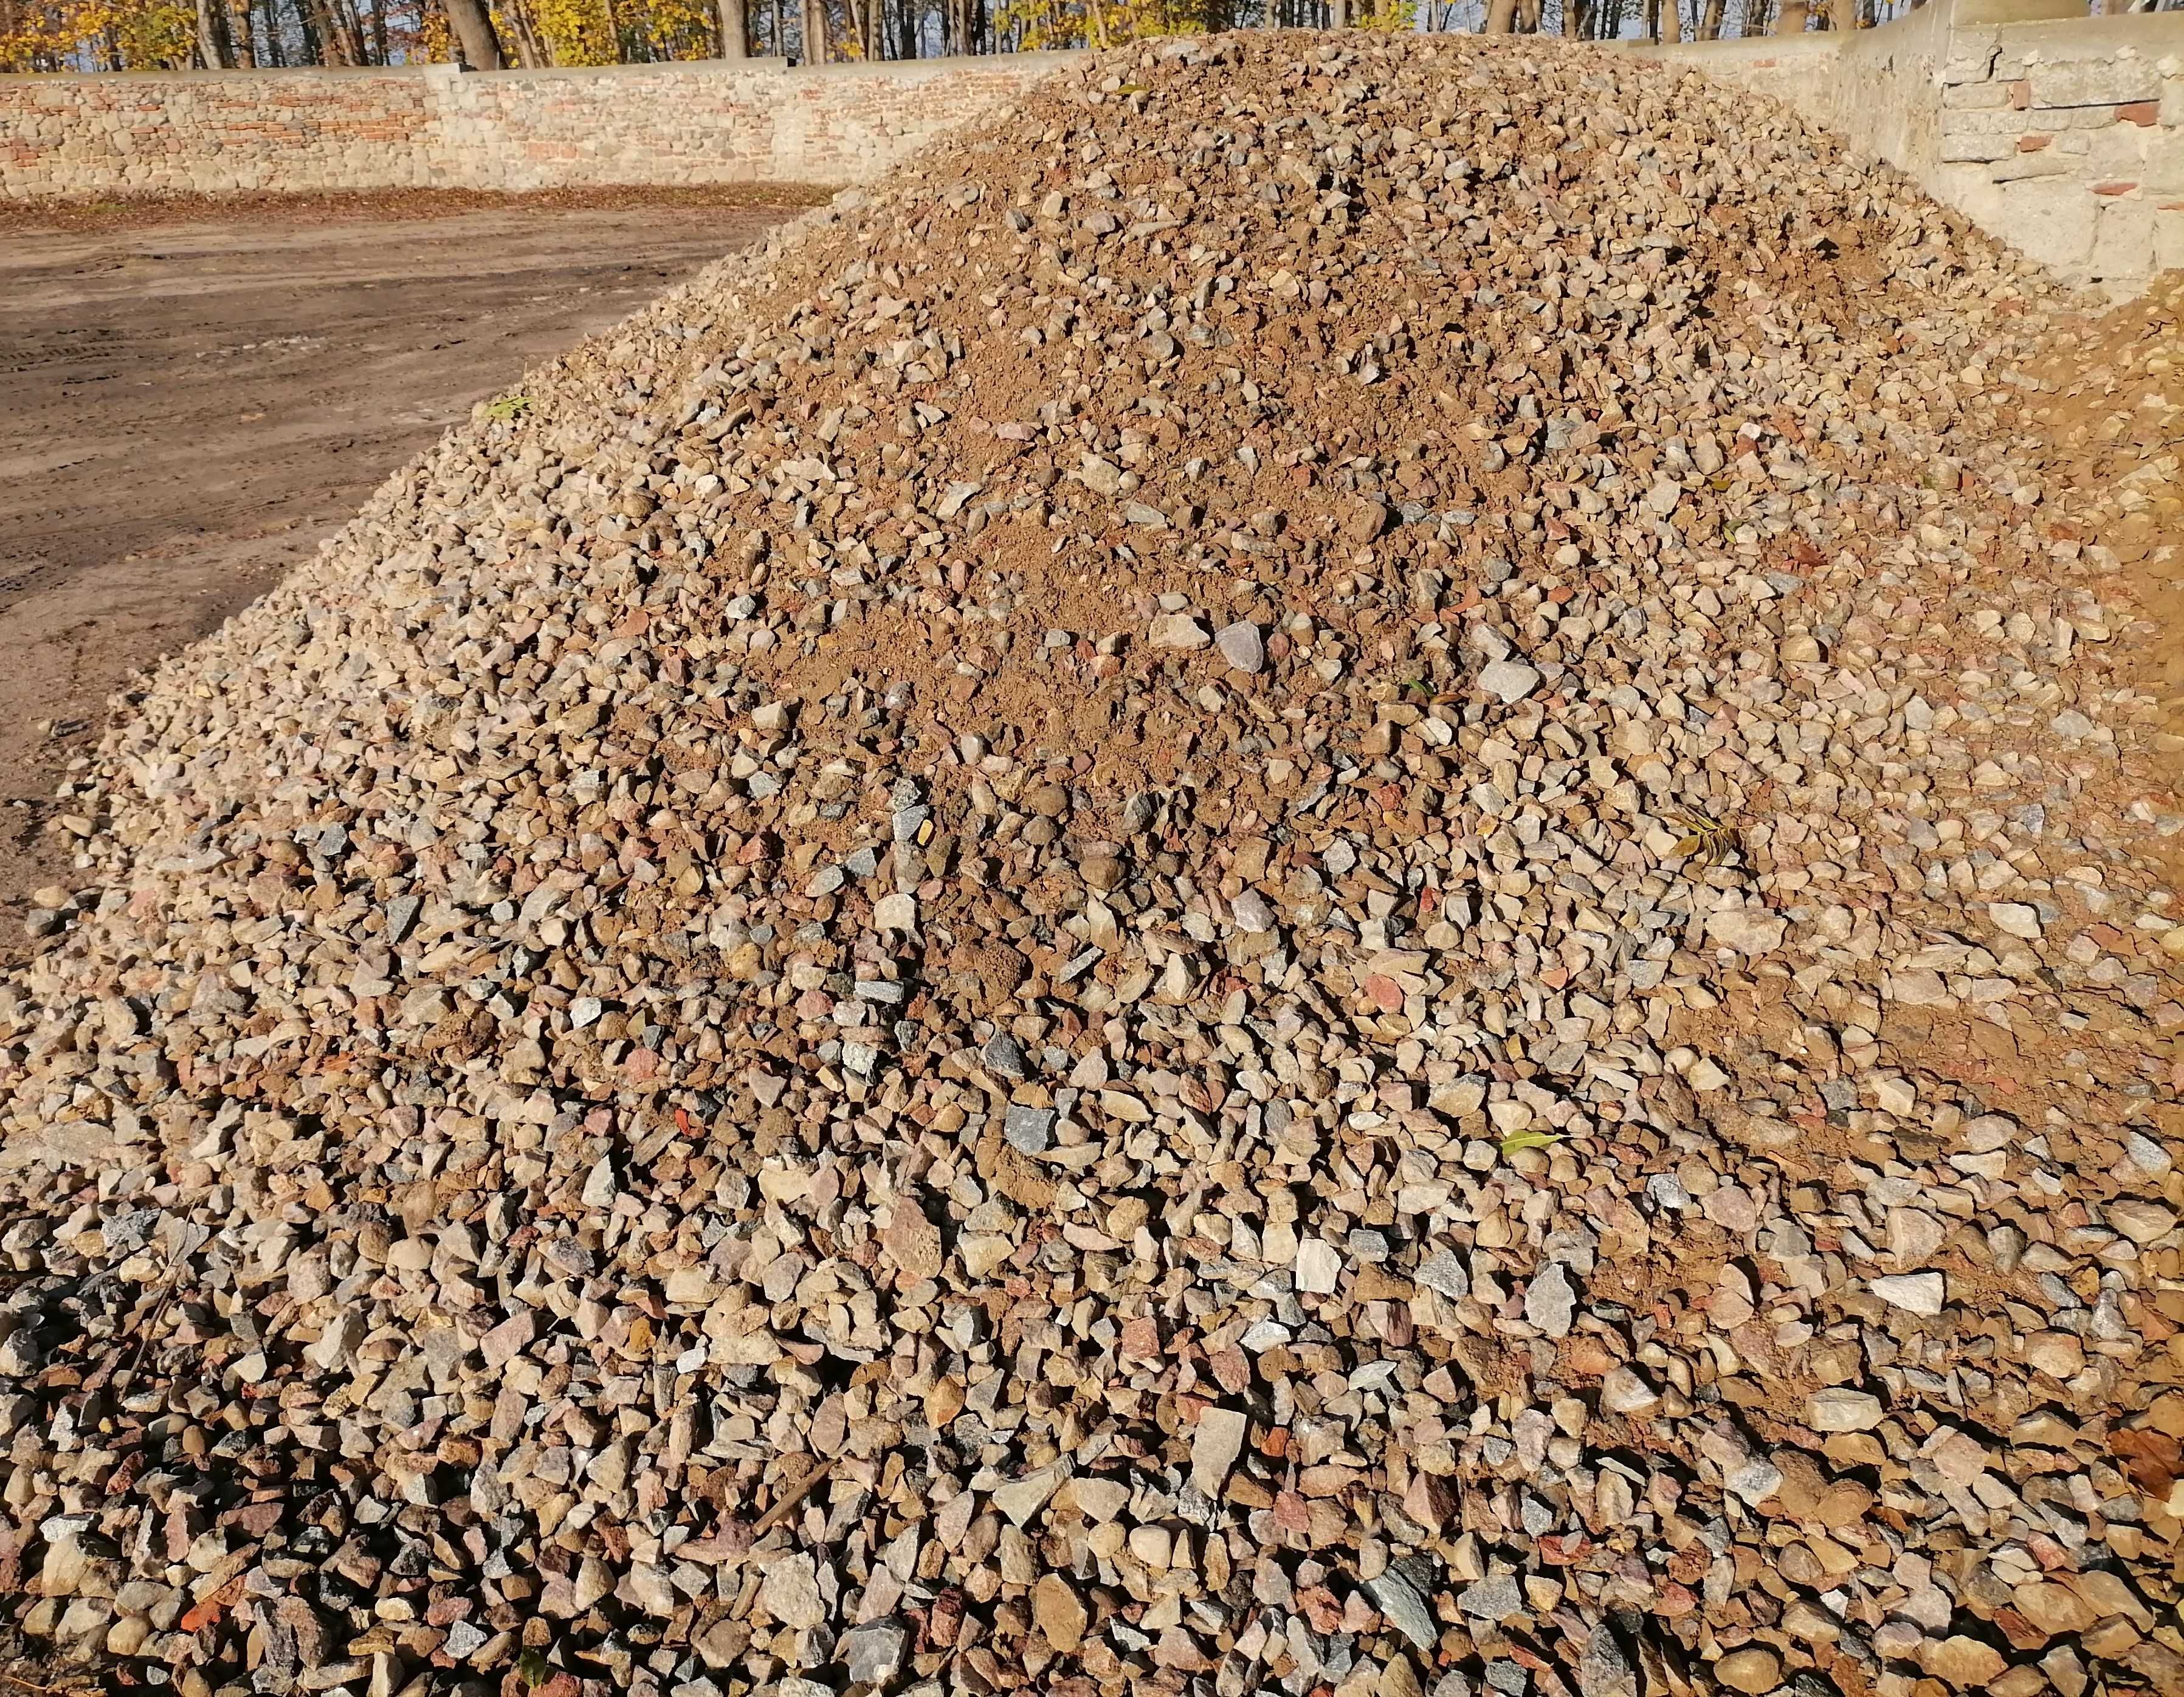 Kamień polny kruszony 0-31 mm, Kruszywo, Tłuczeń